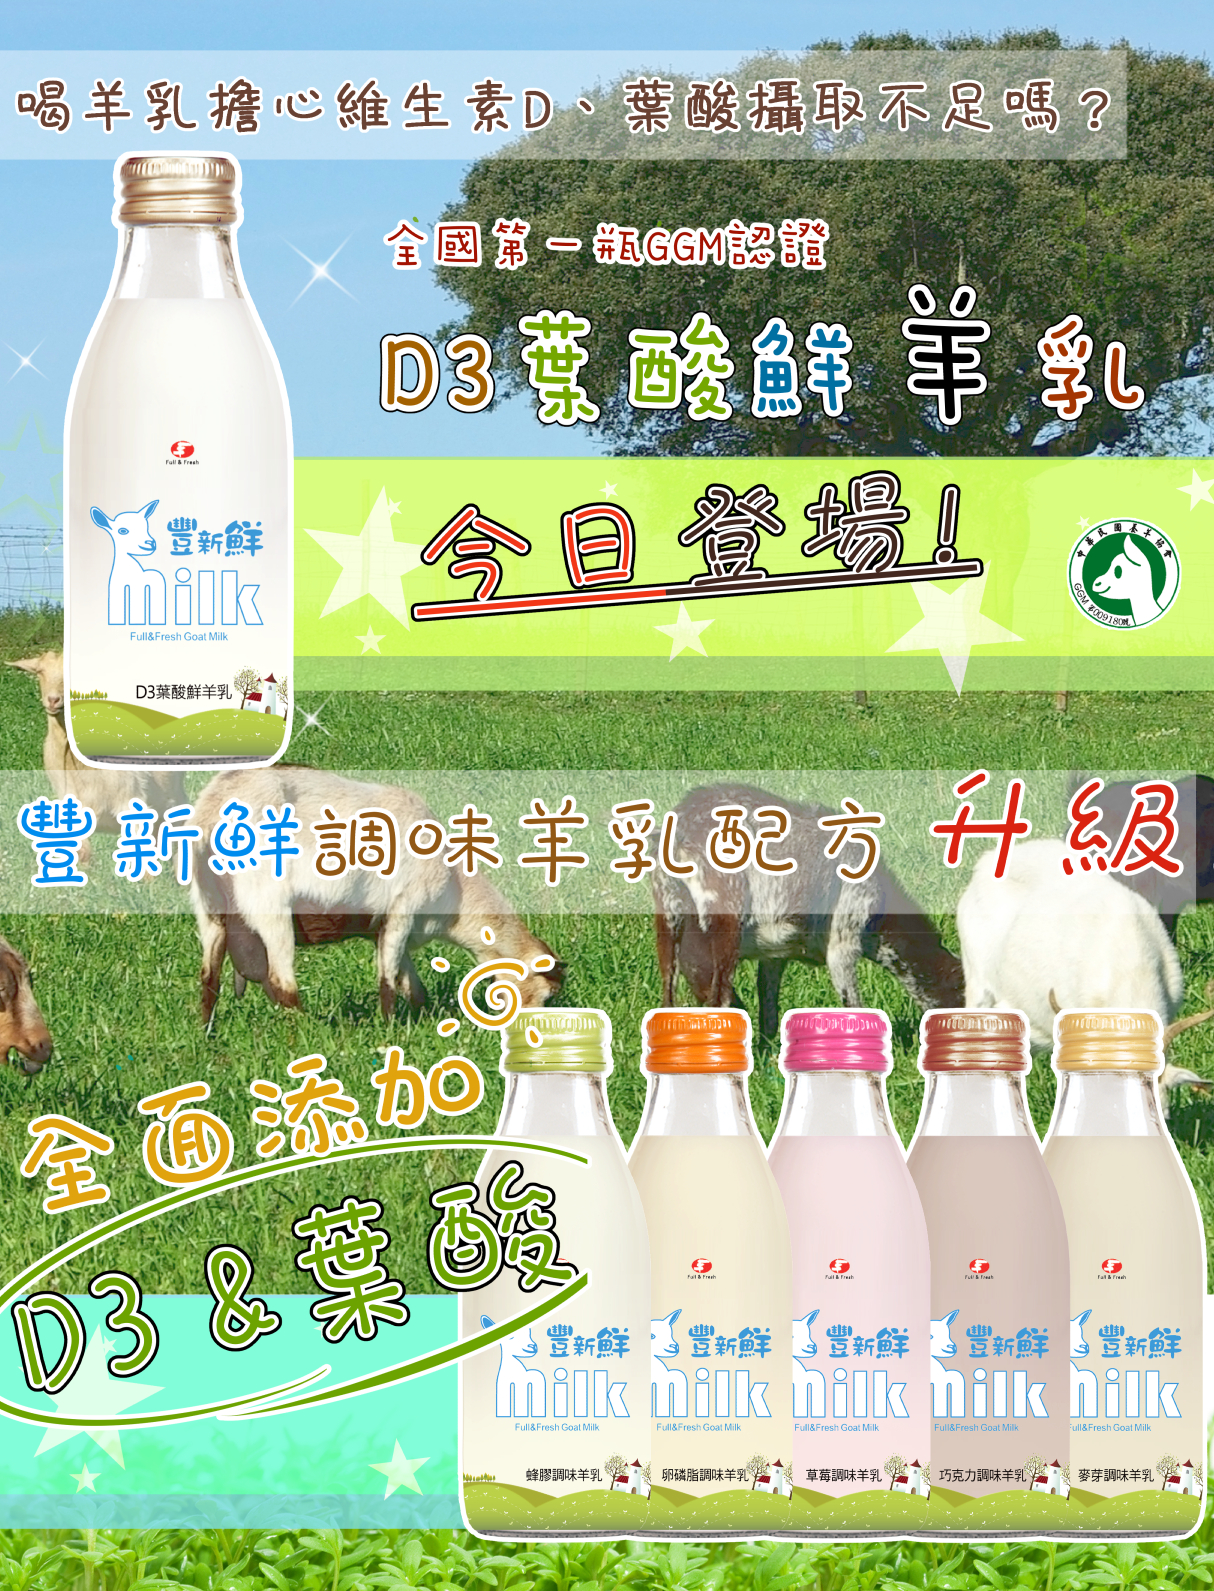 〝全國第一瓶〞GGM認證D3葉酸鮮羊乳全新上架!!